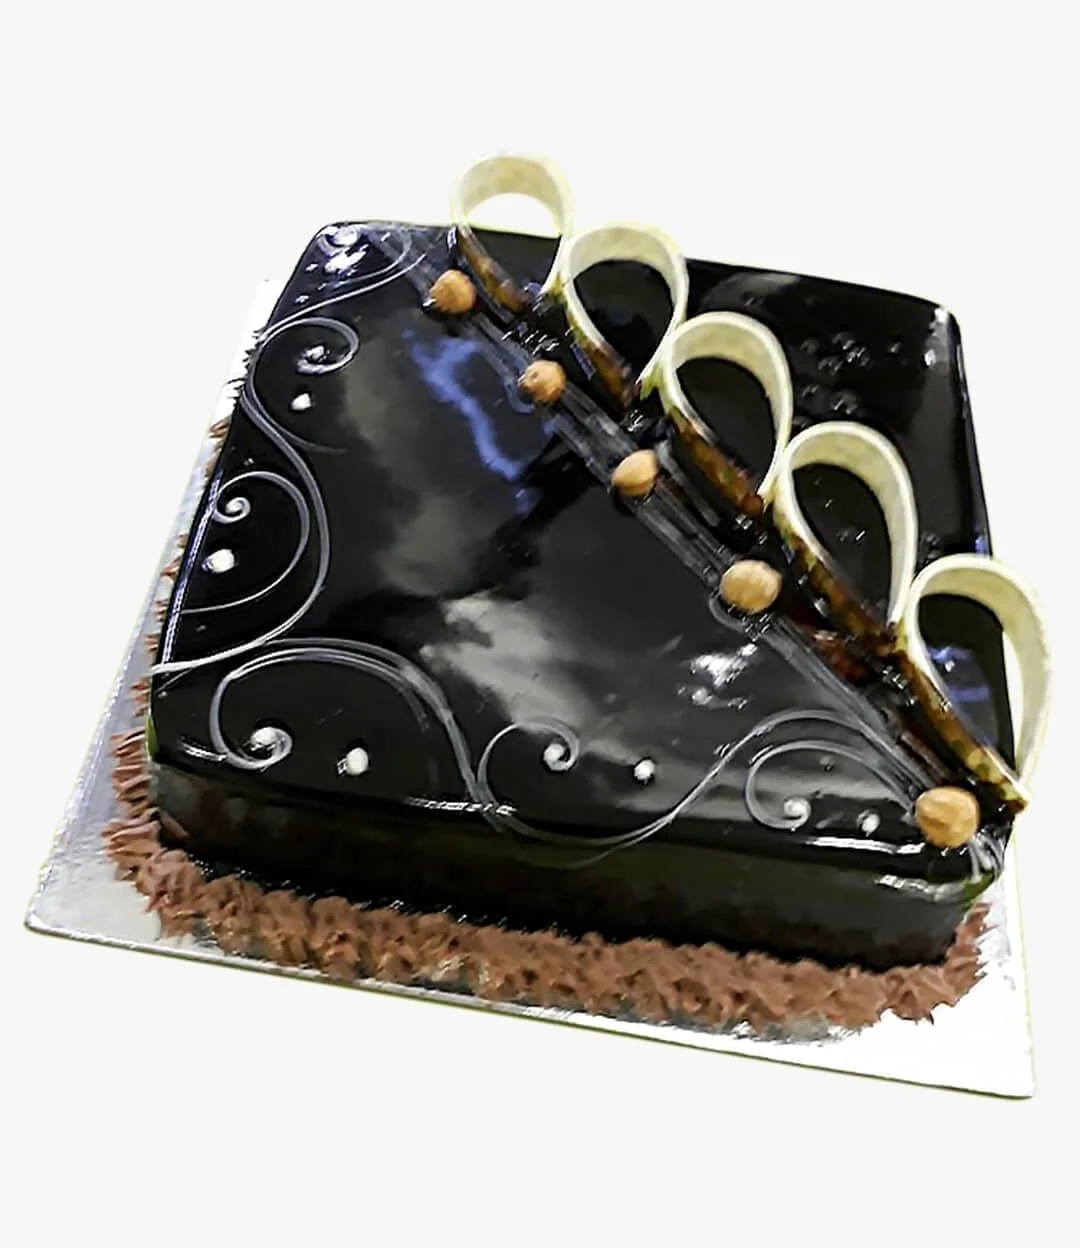 Square-shaped Chocolate Cake with Hazelnut Decoration 